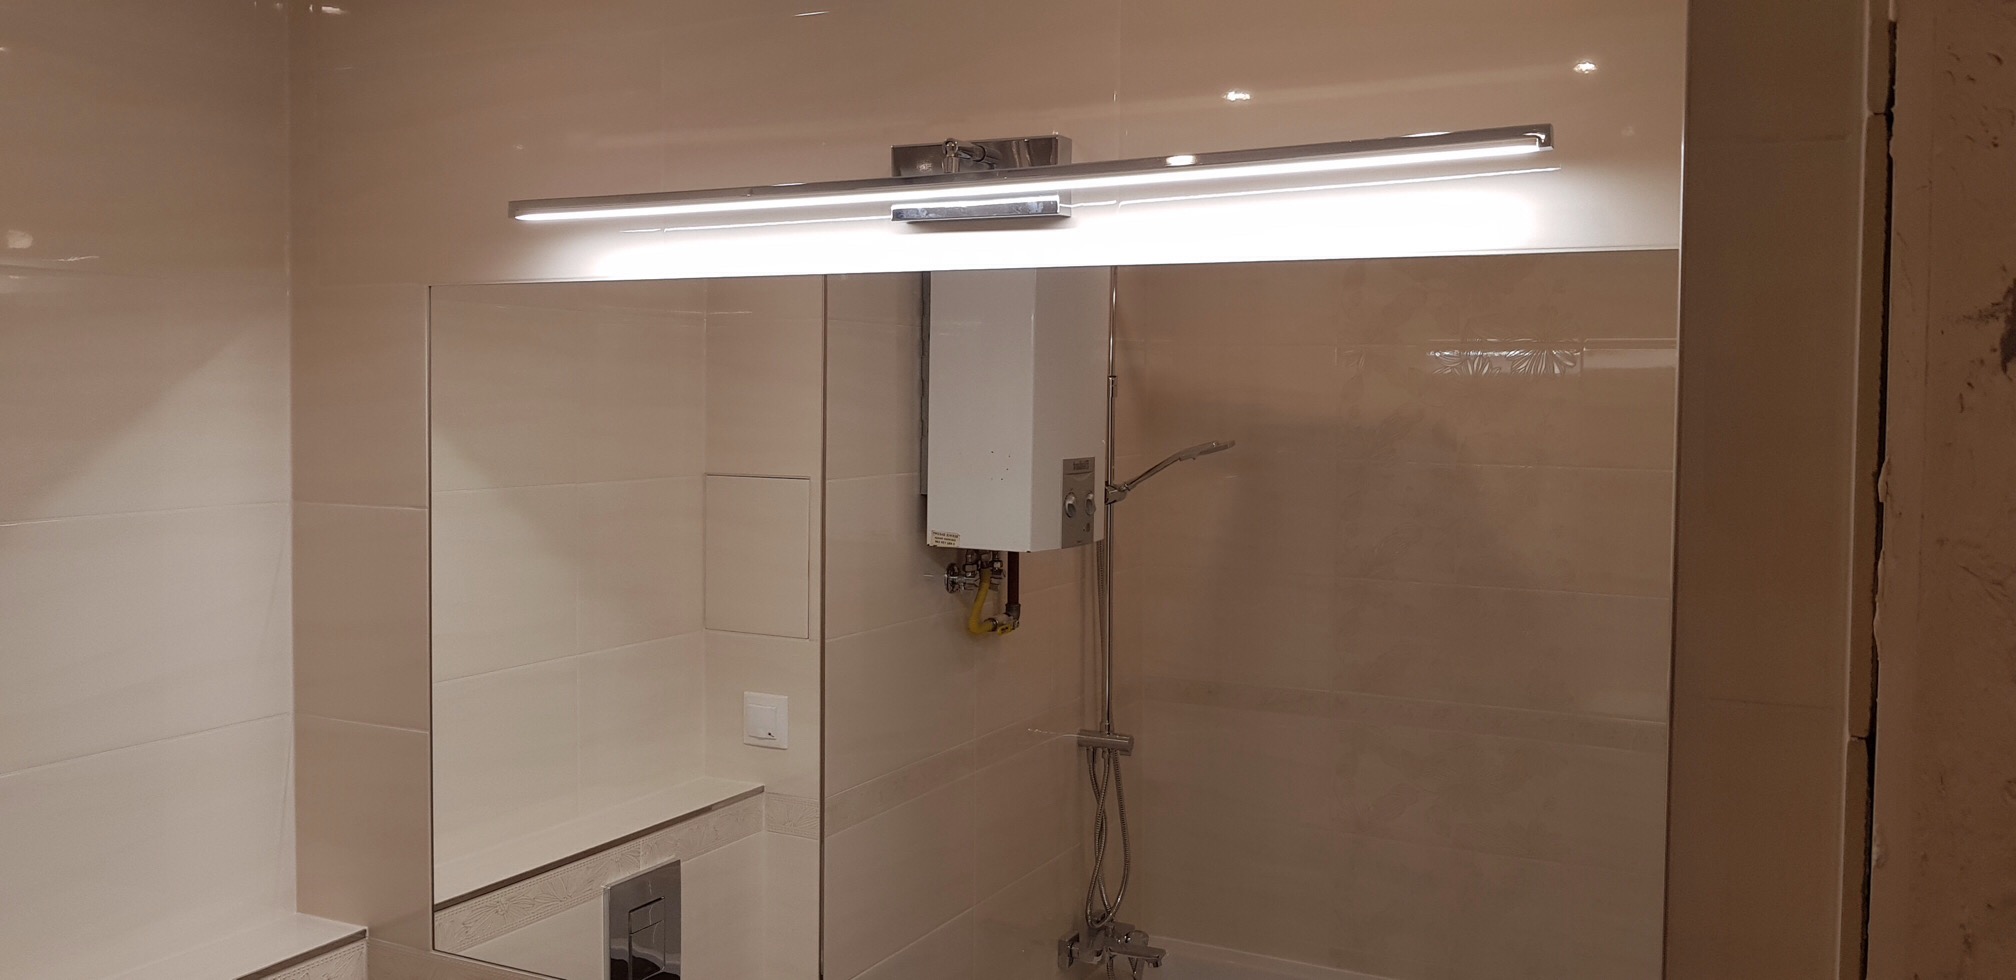 Instalacja oświetleniowa, łazienka